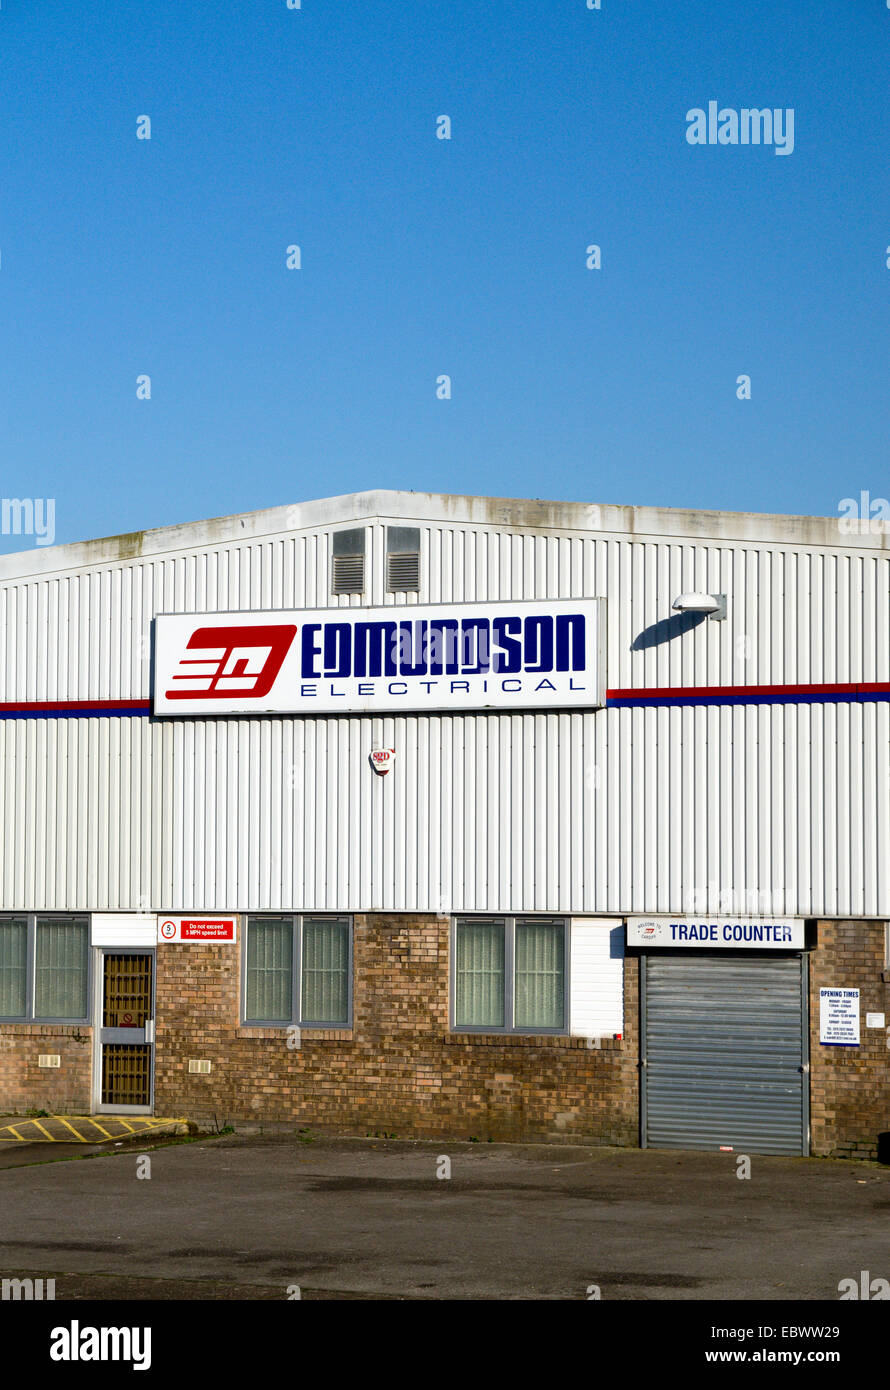 Edmundson Electrical Wholesalers, Cardiff, Wales. Stock Photo